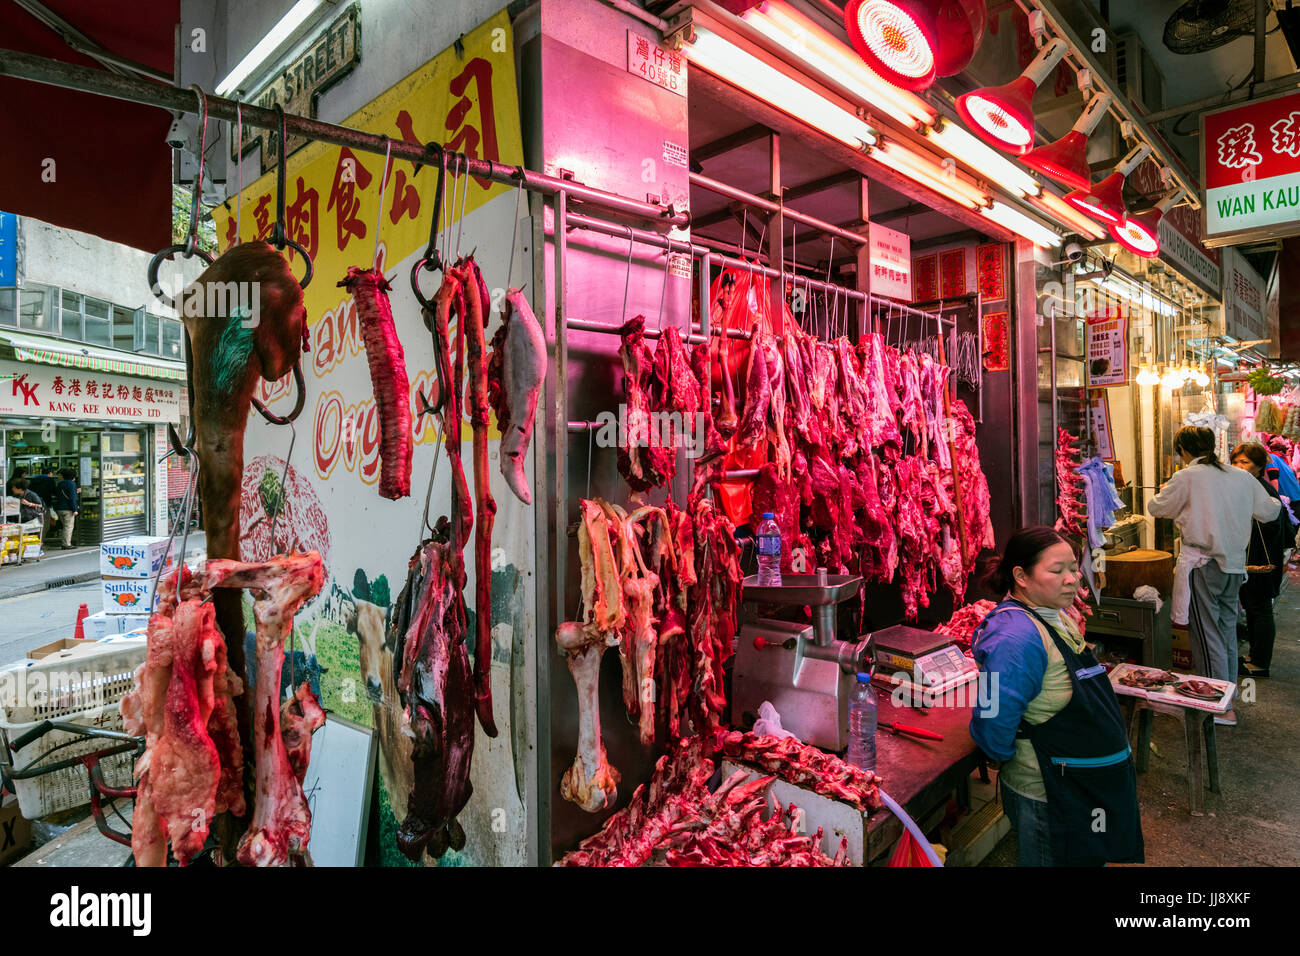 Butcher's Shop, Wan Chai, Hong Kong Stock Photo